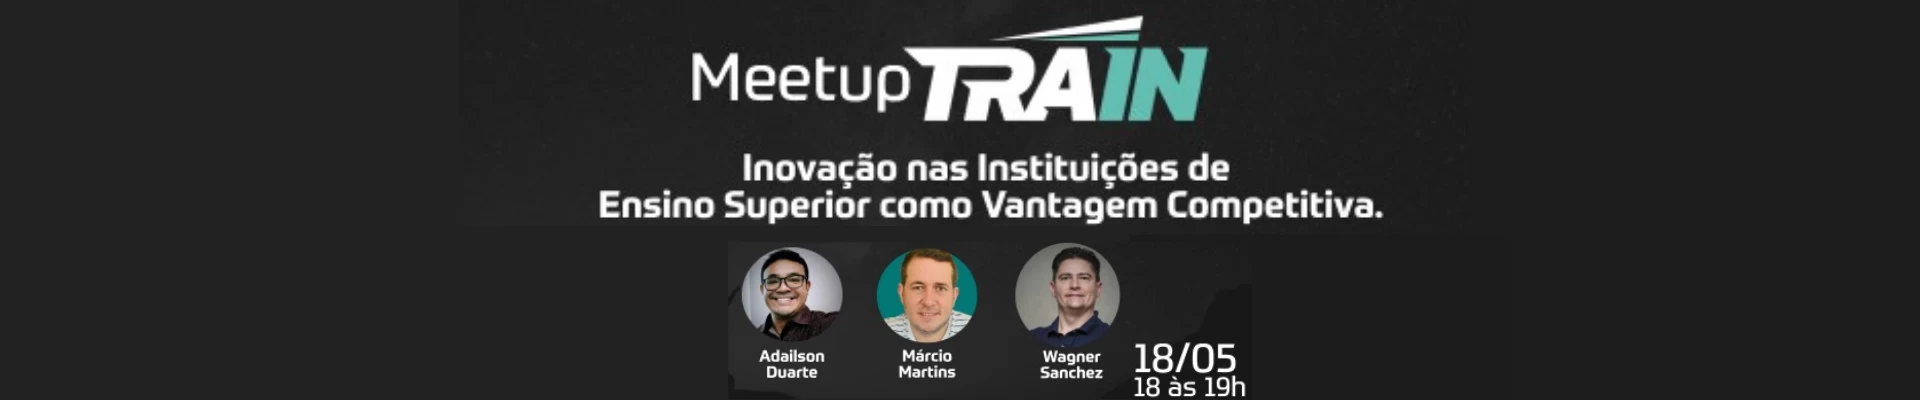 Meetup TRAIN - Inovação nas Instituições de Ensino Superior como Vantagem Competitiva